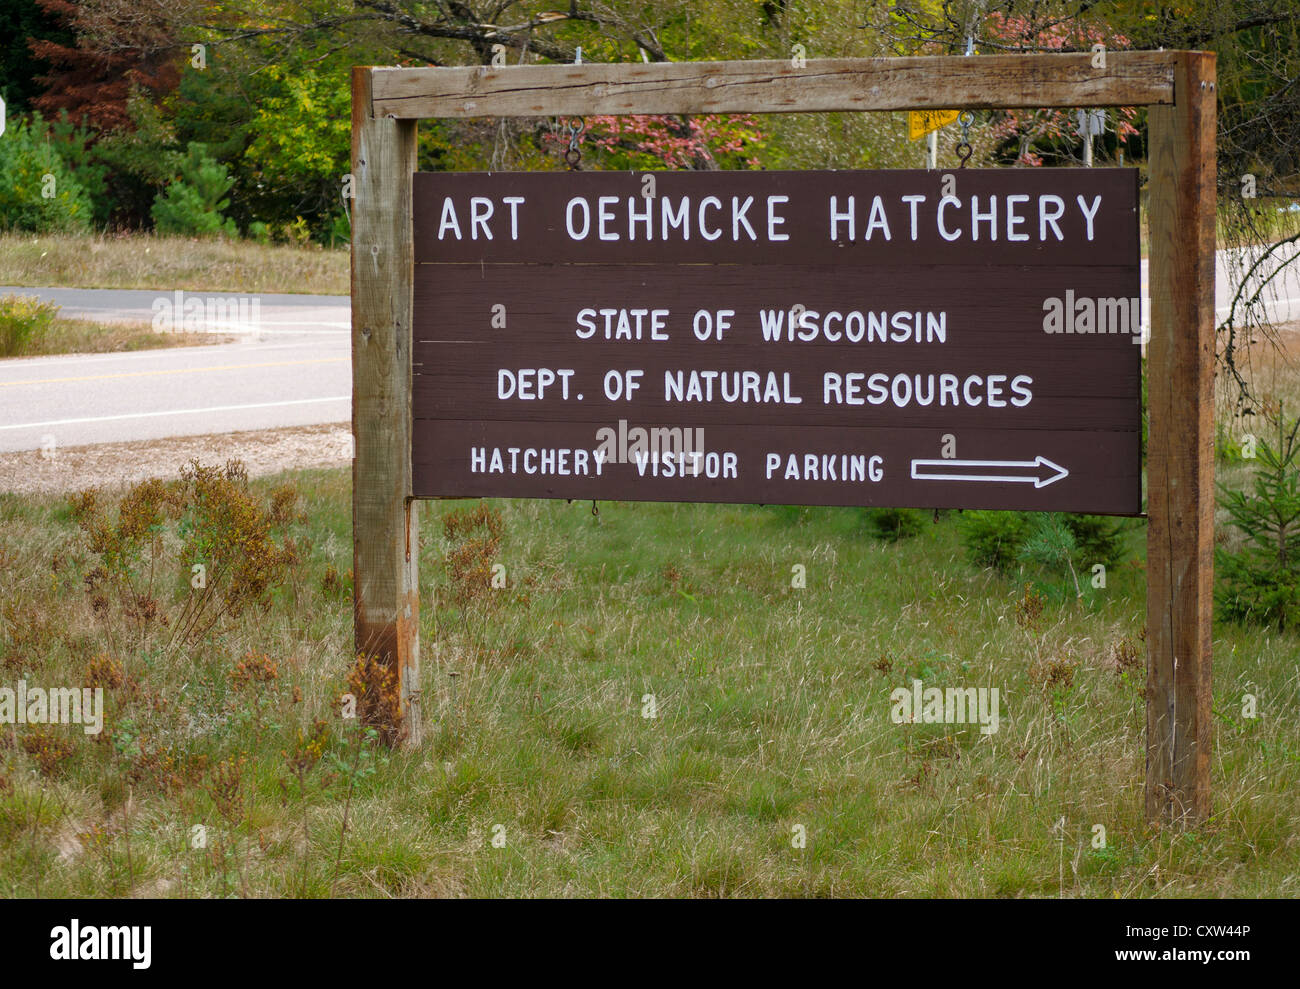 Melden Sie sich für Kunst Oehmcke Brüterei in Waldmeister, Wisconsin, die spezialisiert auf Moschus, Zander und Forellen. Stockfoto